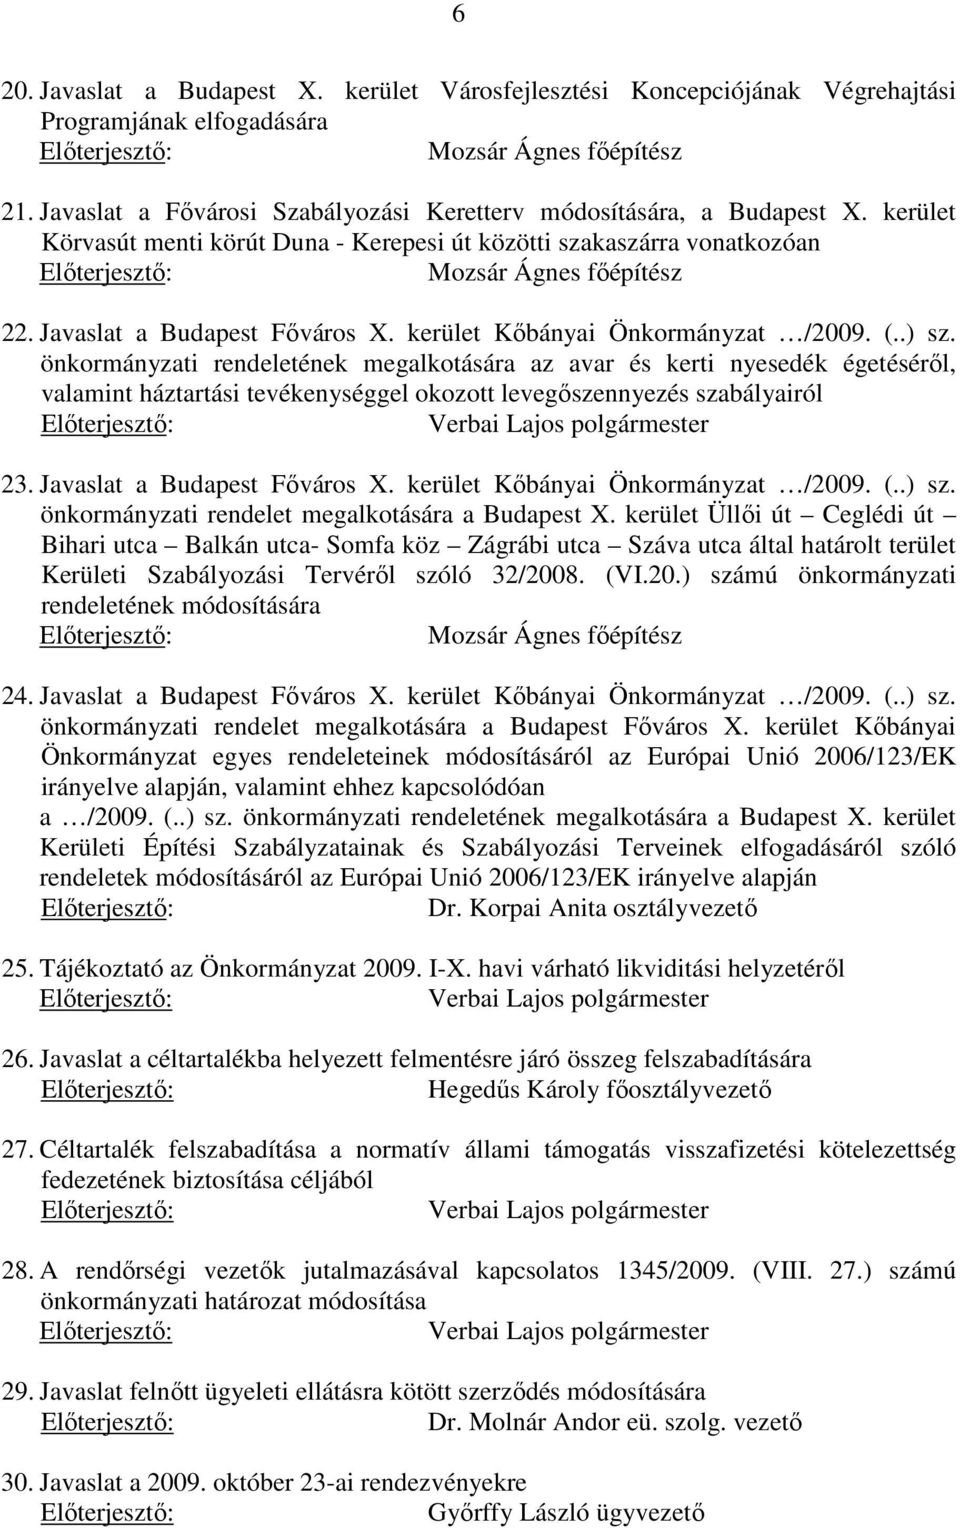 Javaslat a Budapest Főváros X. kerület Kőbányai Önkormányzat /2009. (..) sz.